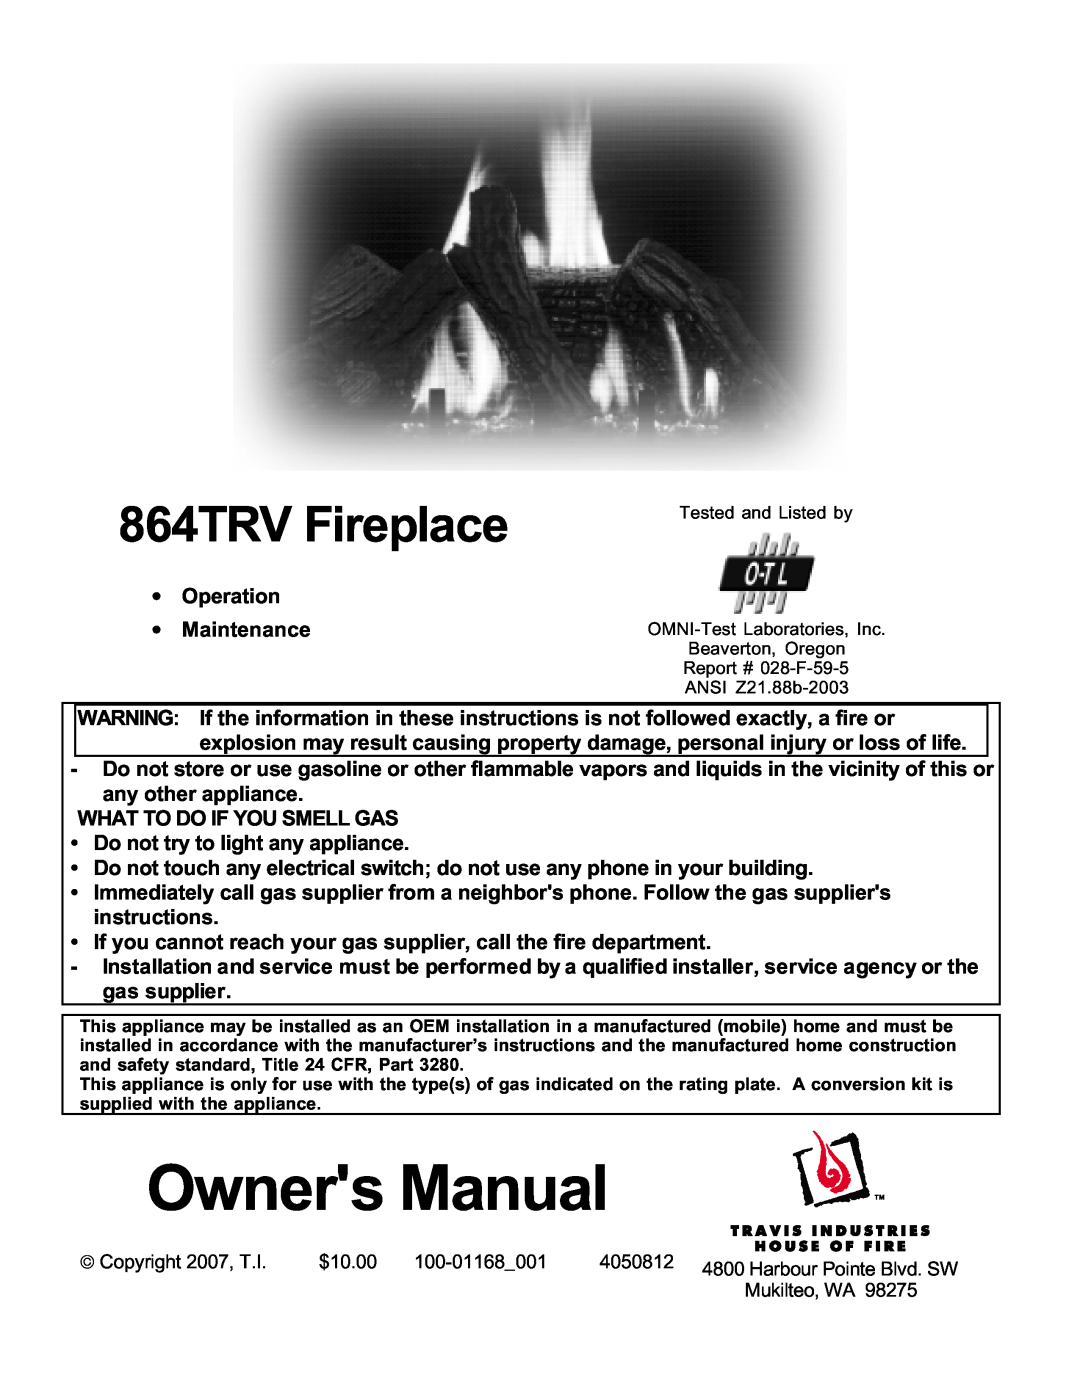 Lopi owner manual 864TRV Fireplace 